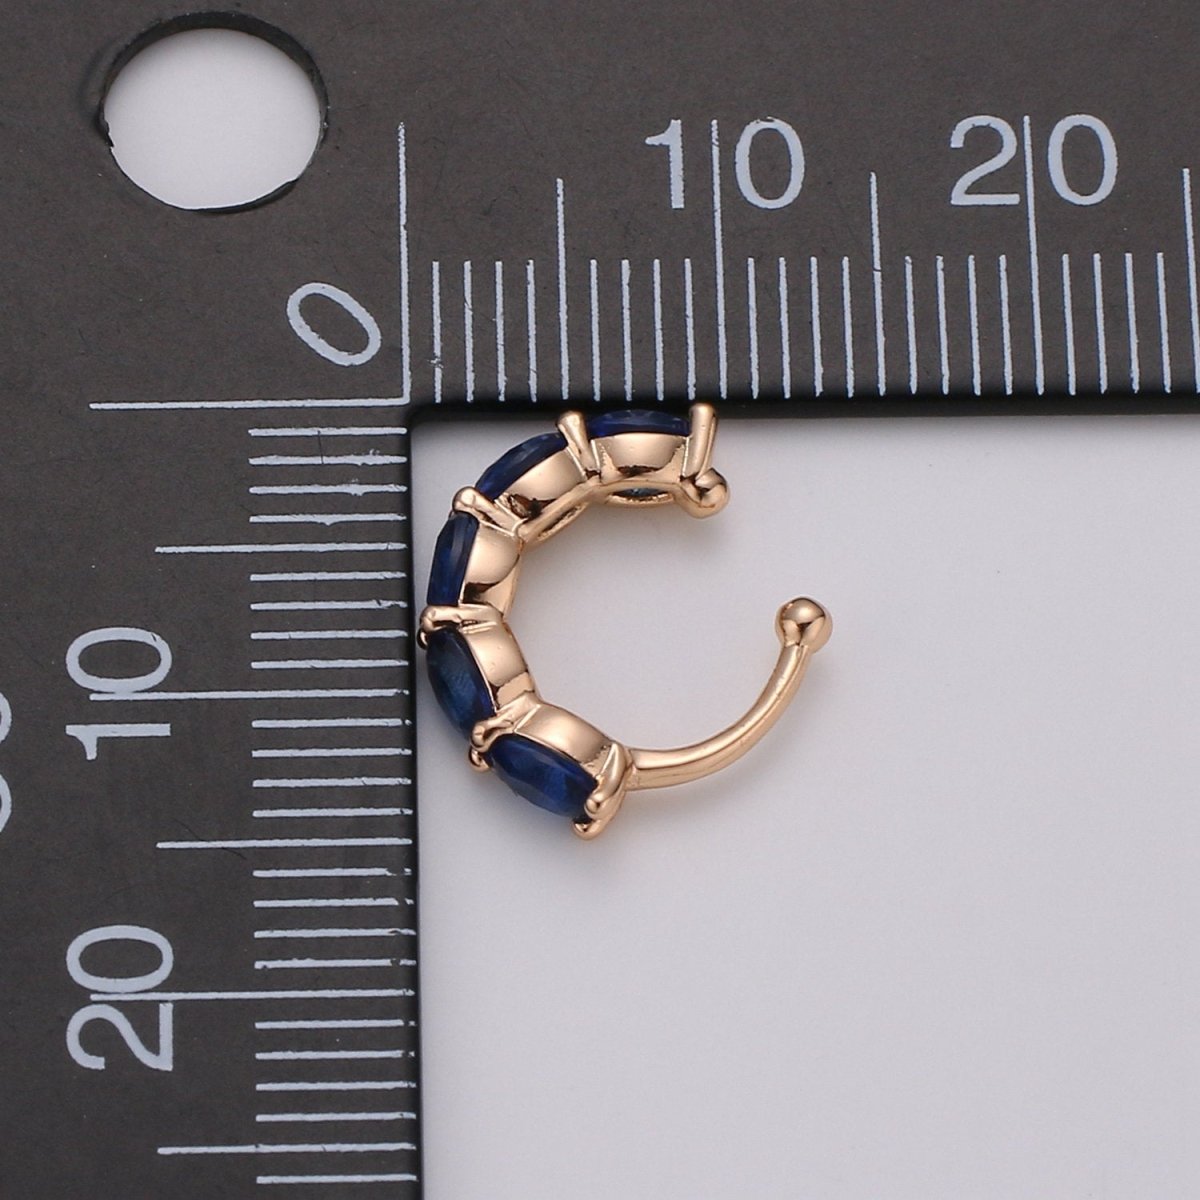 Ear cuff no piercing Gold, Blue Clear ear cuff cz, dainty cuff, gold ear cuff minimalist jewelry K-758 conch cuff cartilage cuff K-758 - DLUXCA